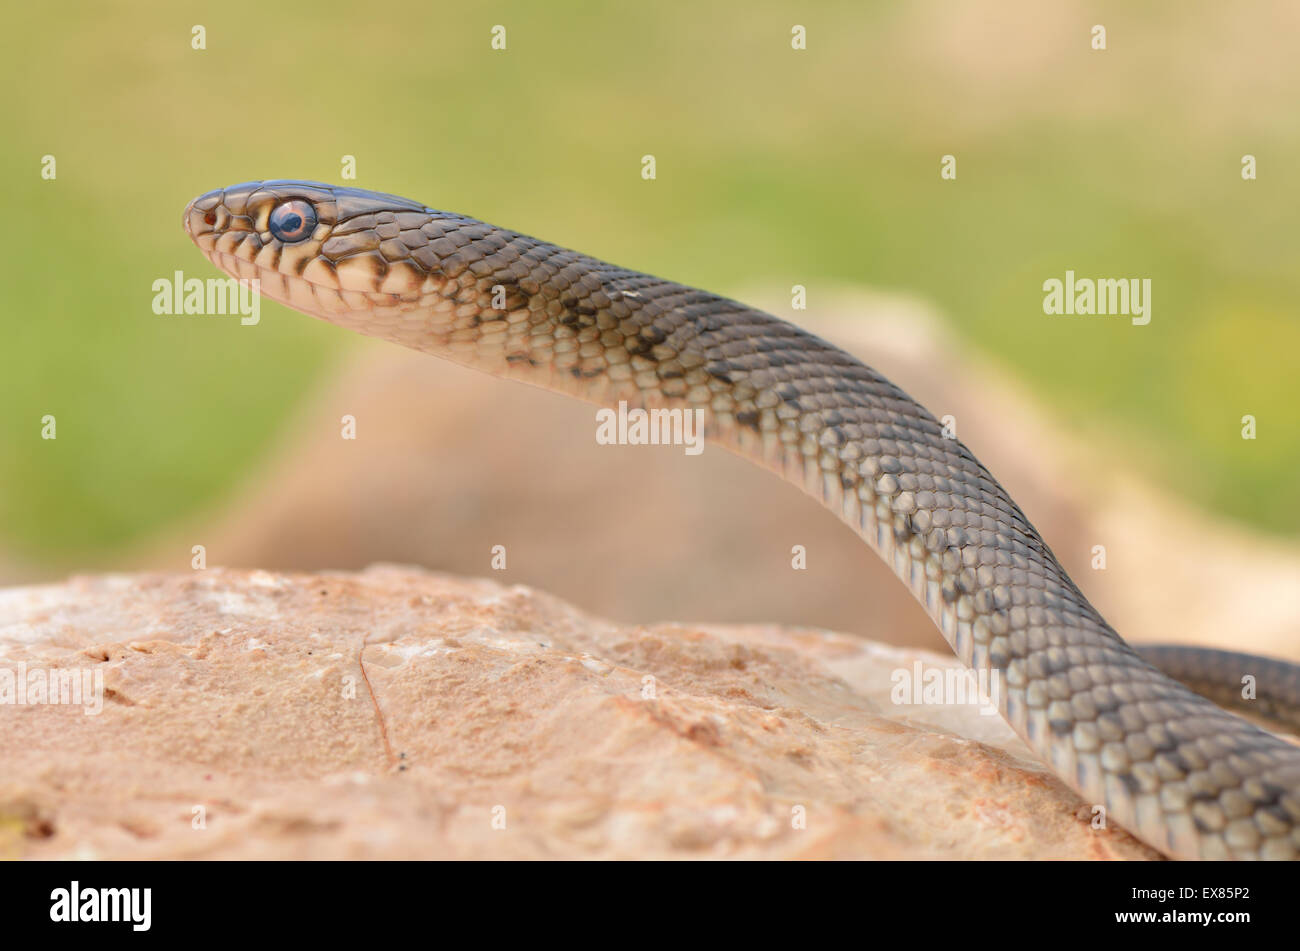 Semiadult large whip snake (Dolichophis jugularis), Lycian Coast, Lycia, Southwest Turkey Stock Photo